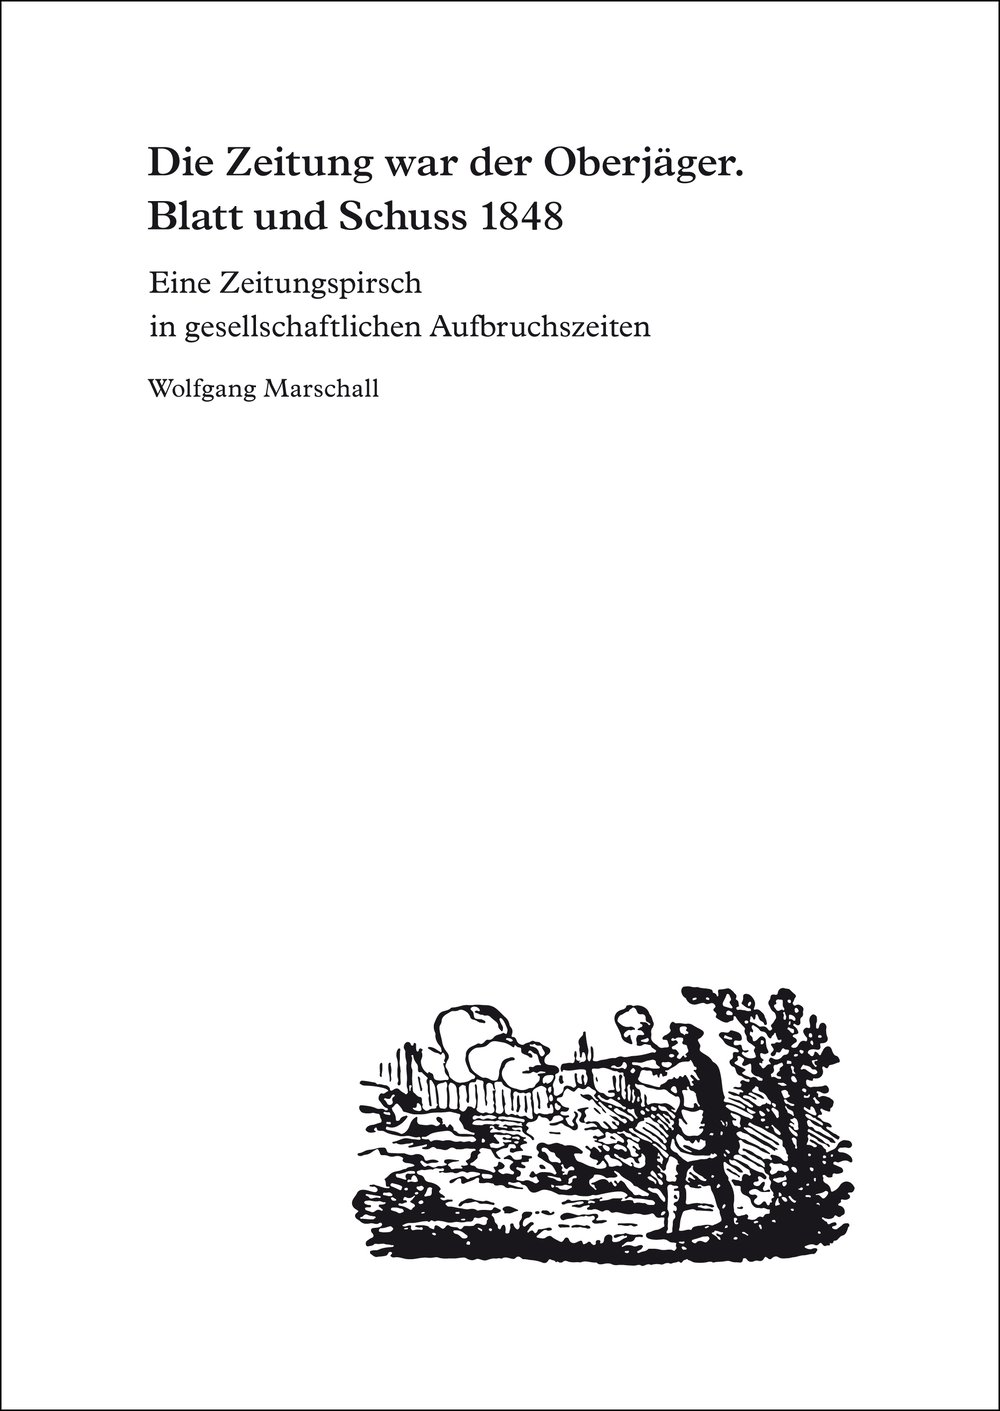 Image of Wolfgang Marschall: Die Zeitung war der Oberjäger. Blatt und Schuss 1848